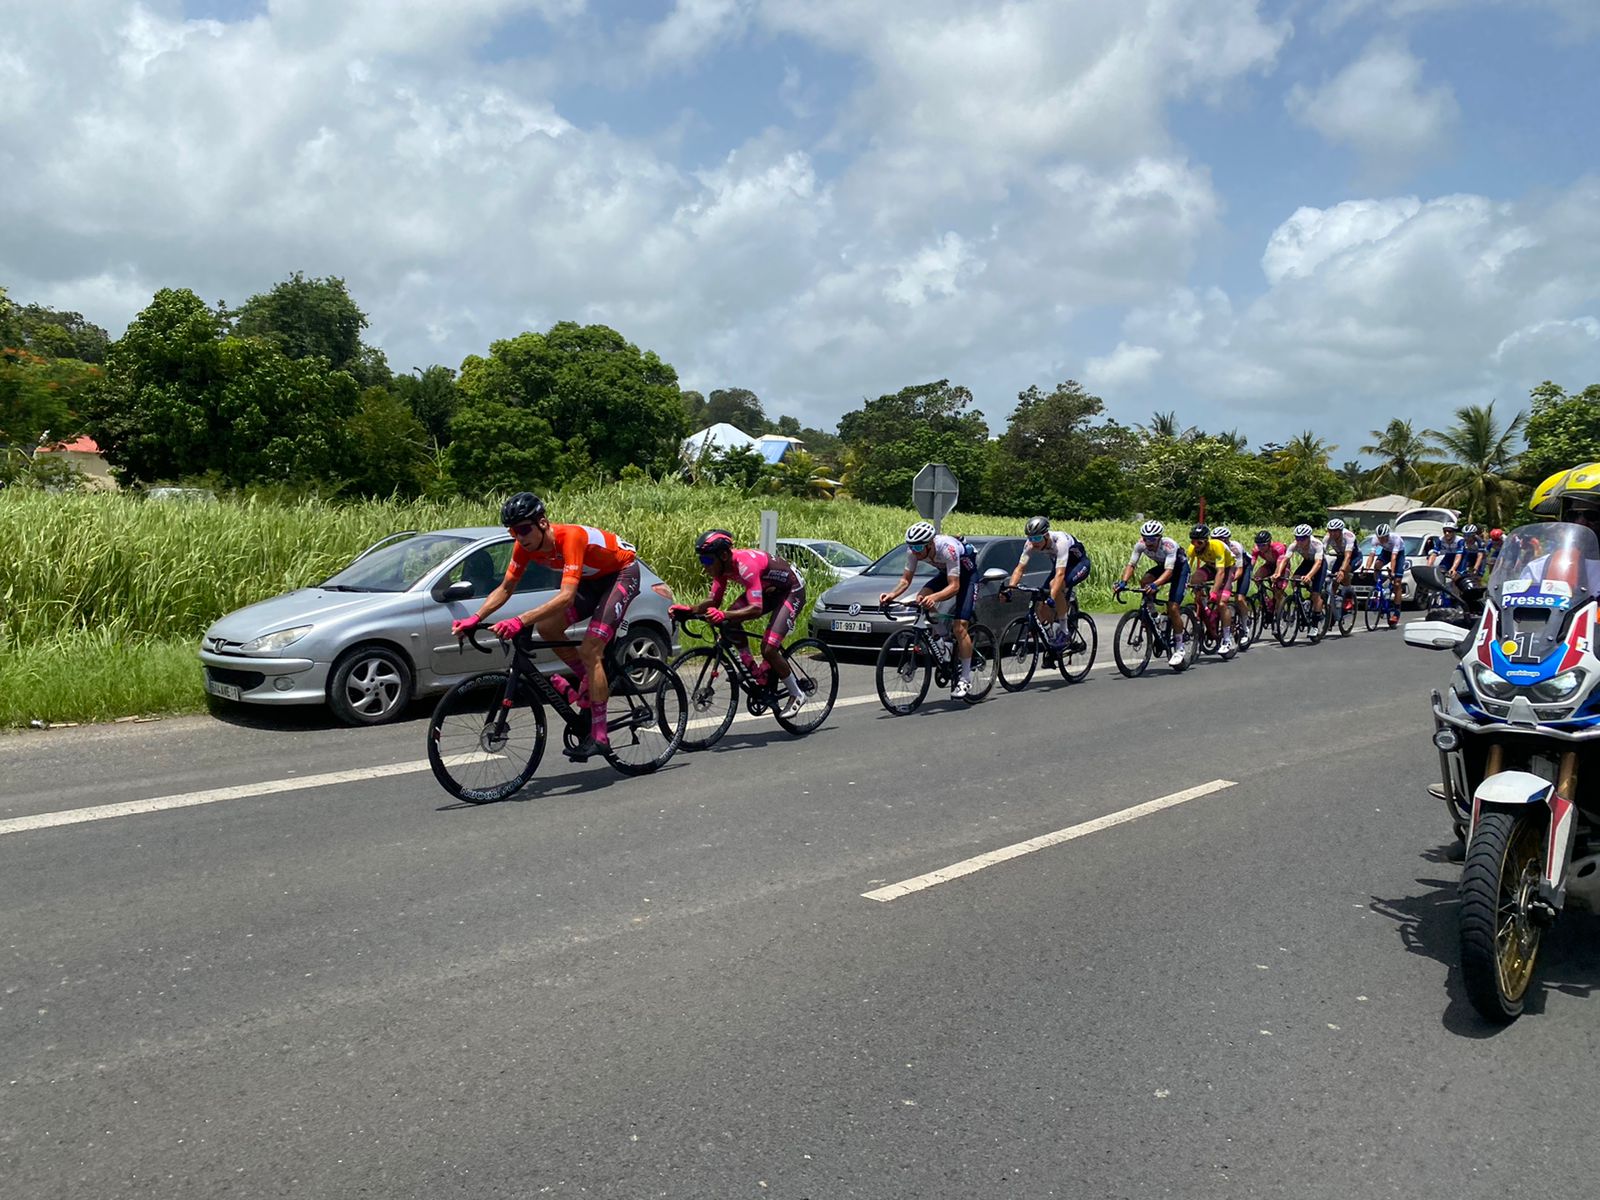     1ère étape du Tour Cycliste de Guadeloupe (Gosier / Baie-Mahault) : roulante mais piégeuse

